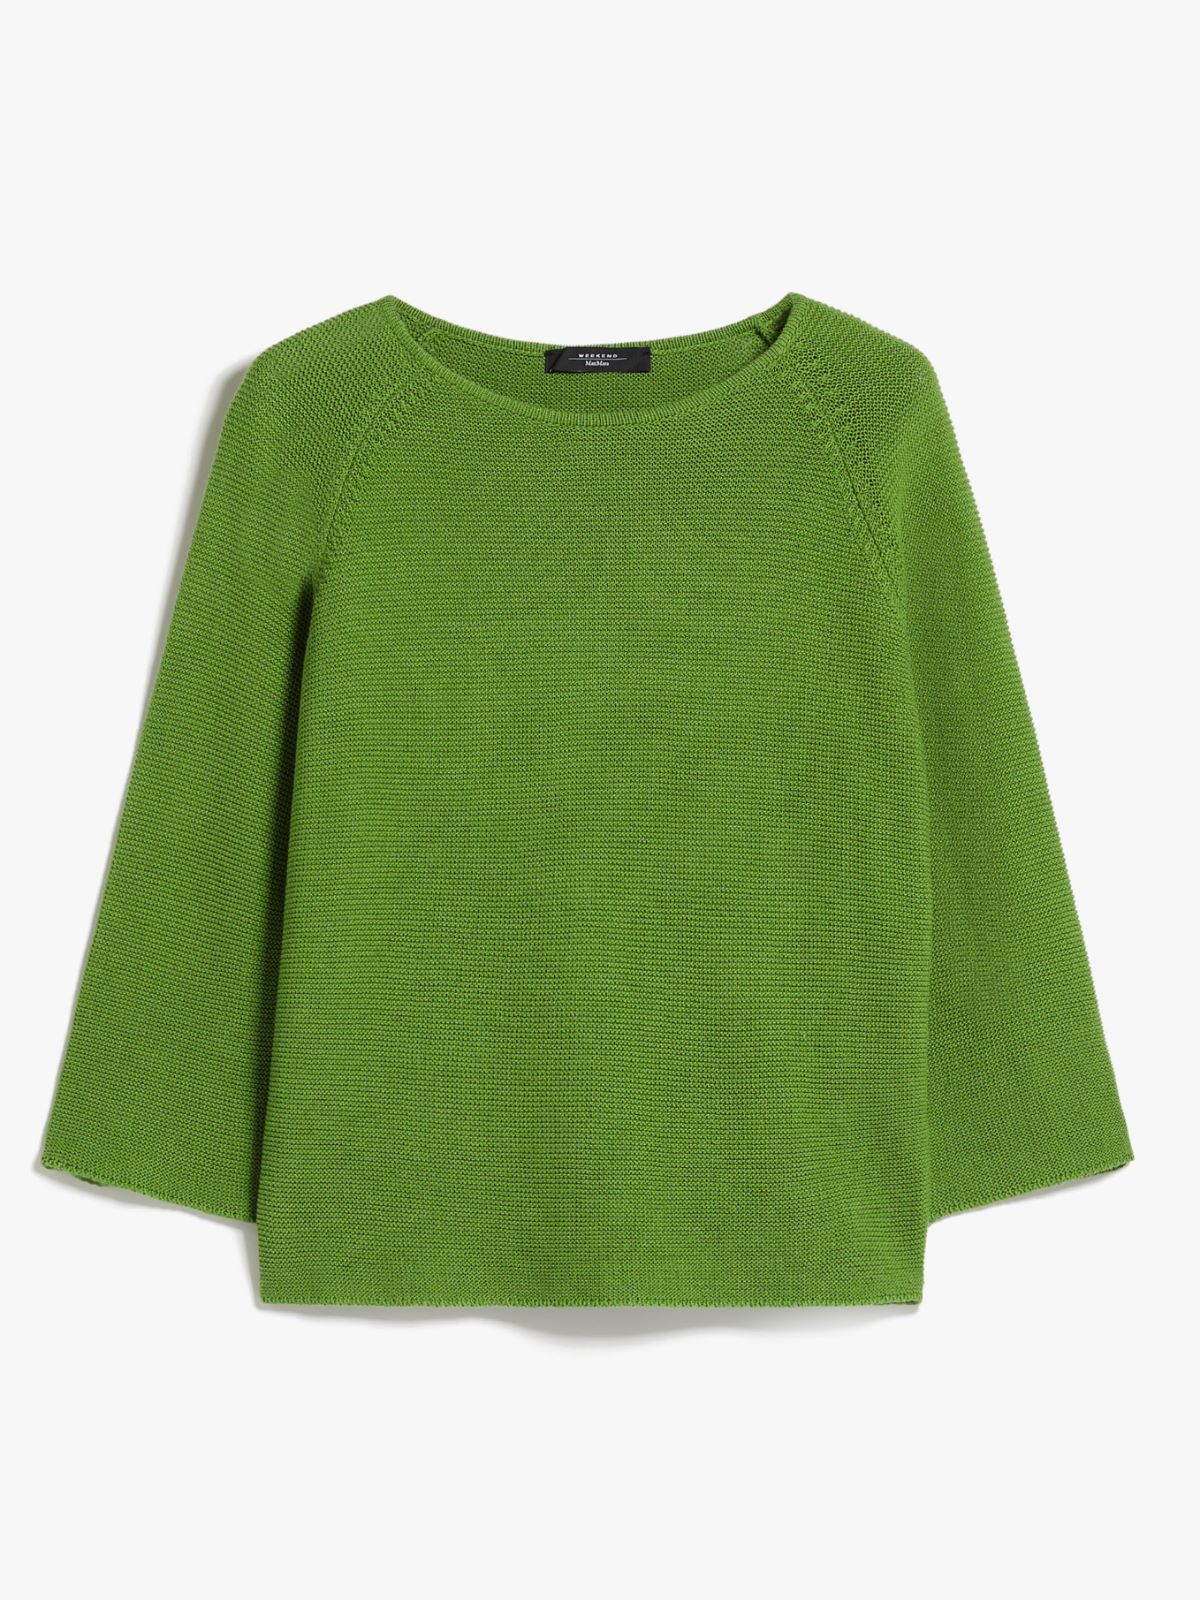 Round-neck cotton top, green | Weekend Max Mara